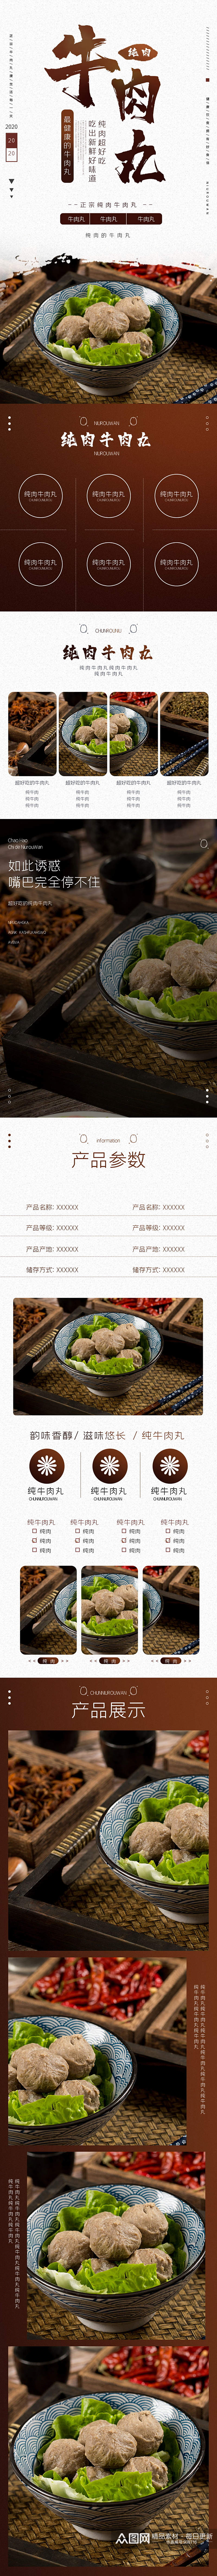 牛肉丸食品茶饮美食生鲜蔬菜详情页素材